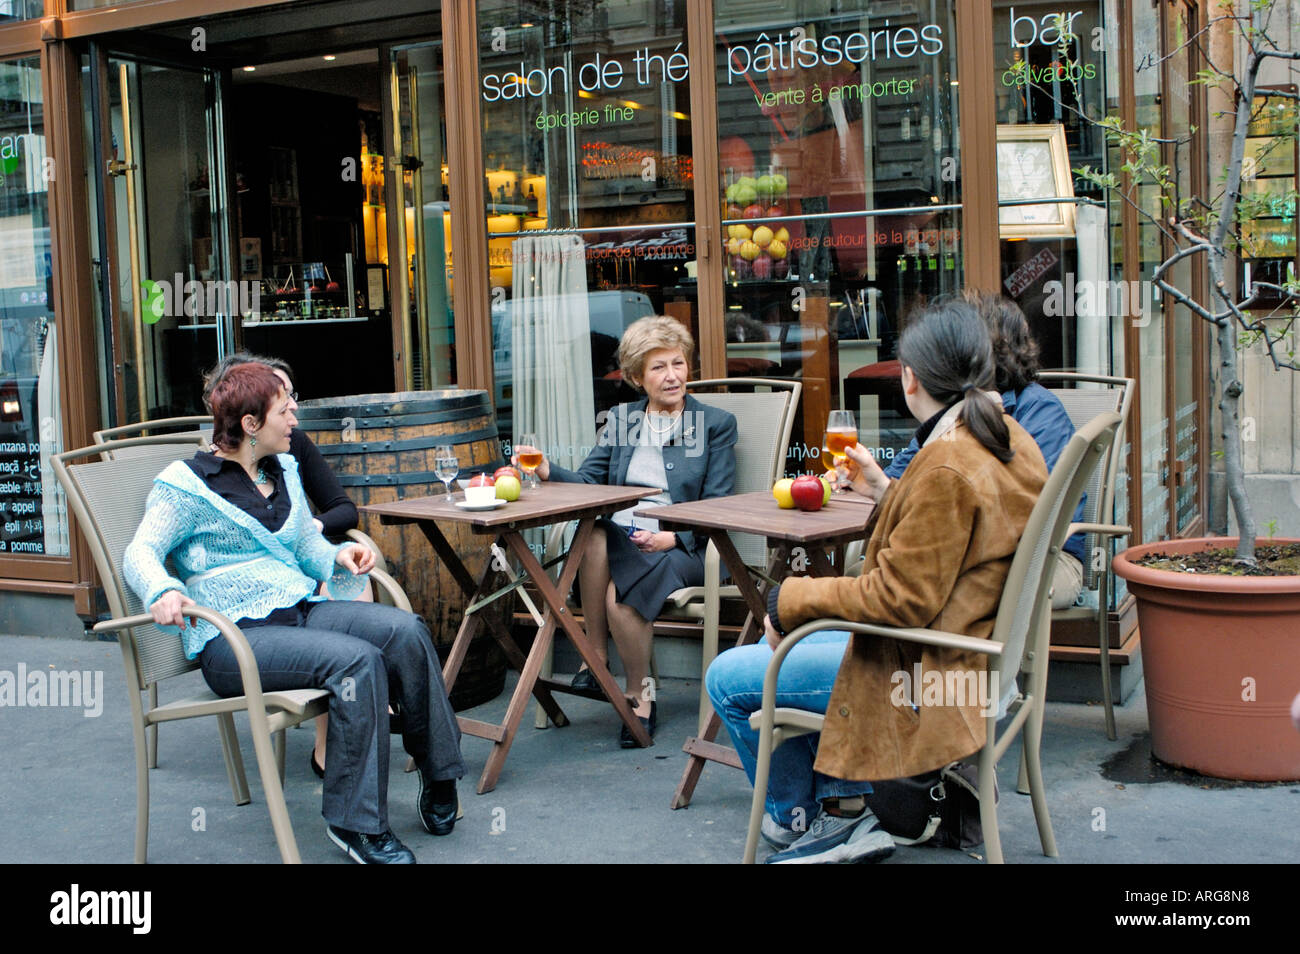 Paris France, Bistro français, café restaurant, (spécialité pommes) Groupe 'Pomze' femmes bavardant entre amis, dîner, partager des boissons, amis dans la rue Banque D'Images